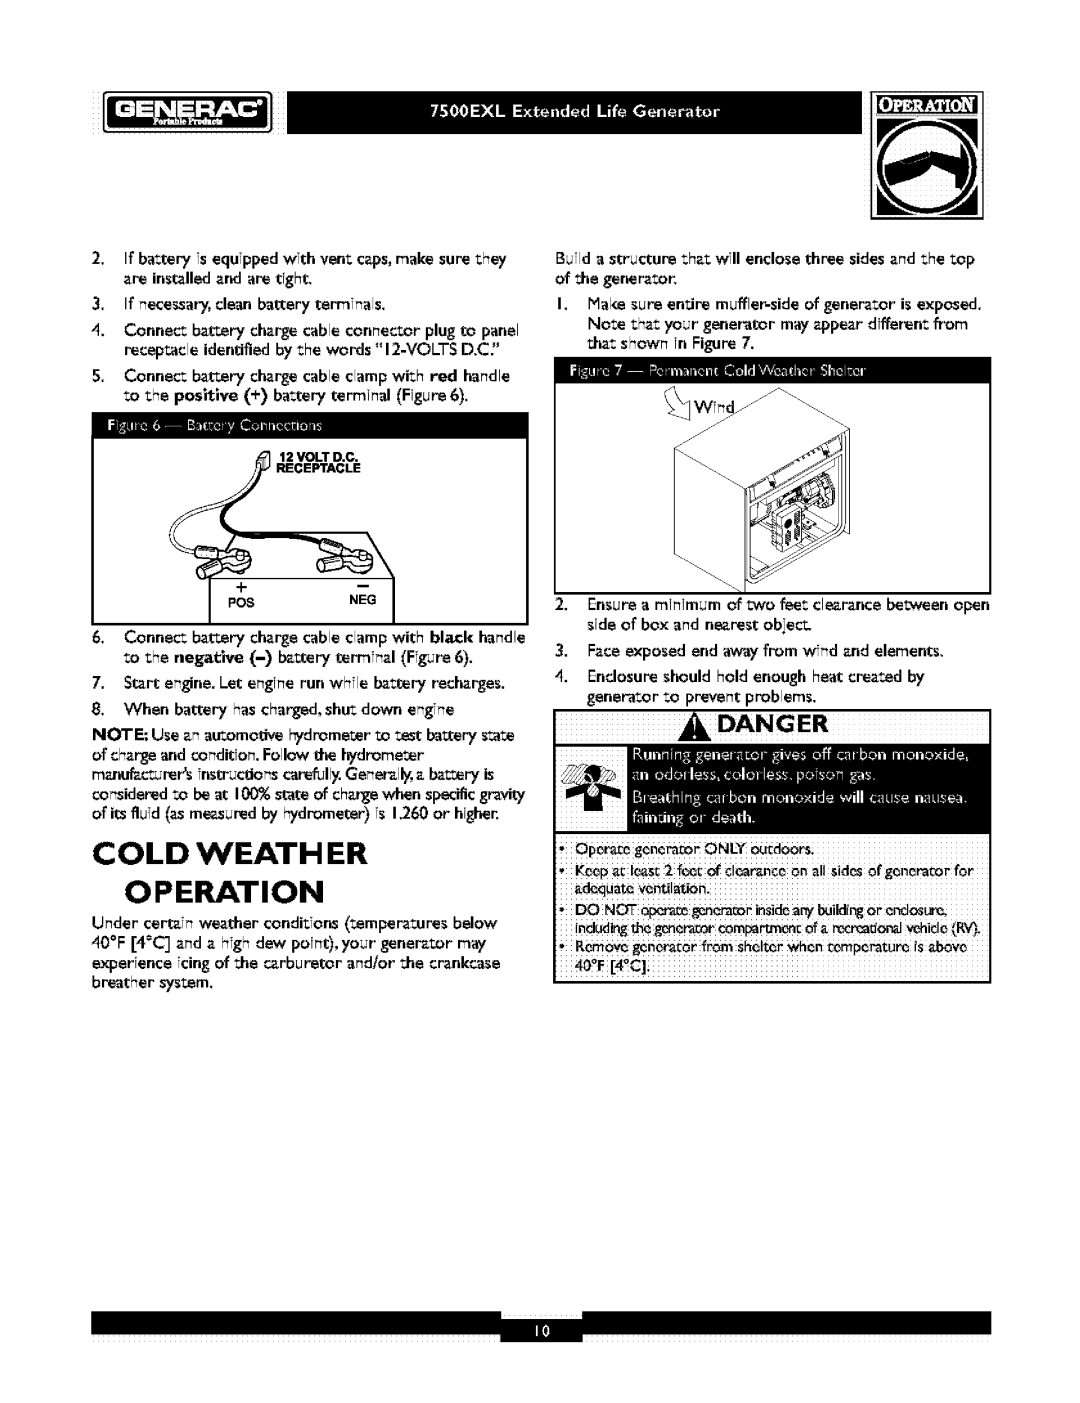 Generac 1019-3 owner manual Cold Weath Er, Operation, 0 c, Danger 